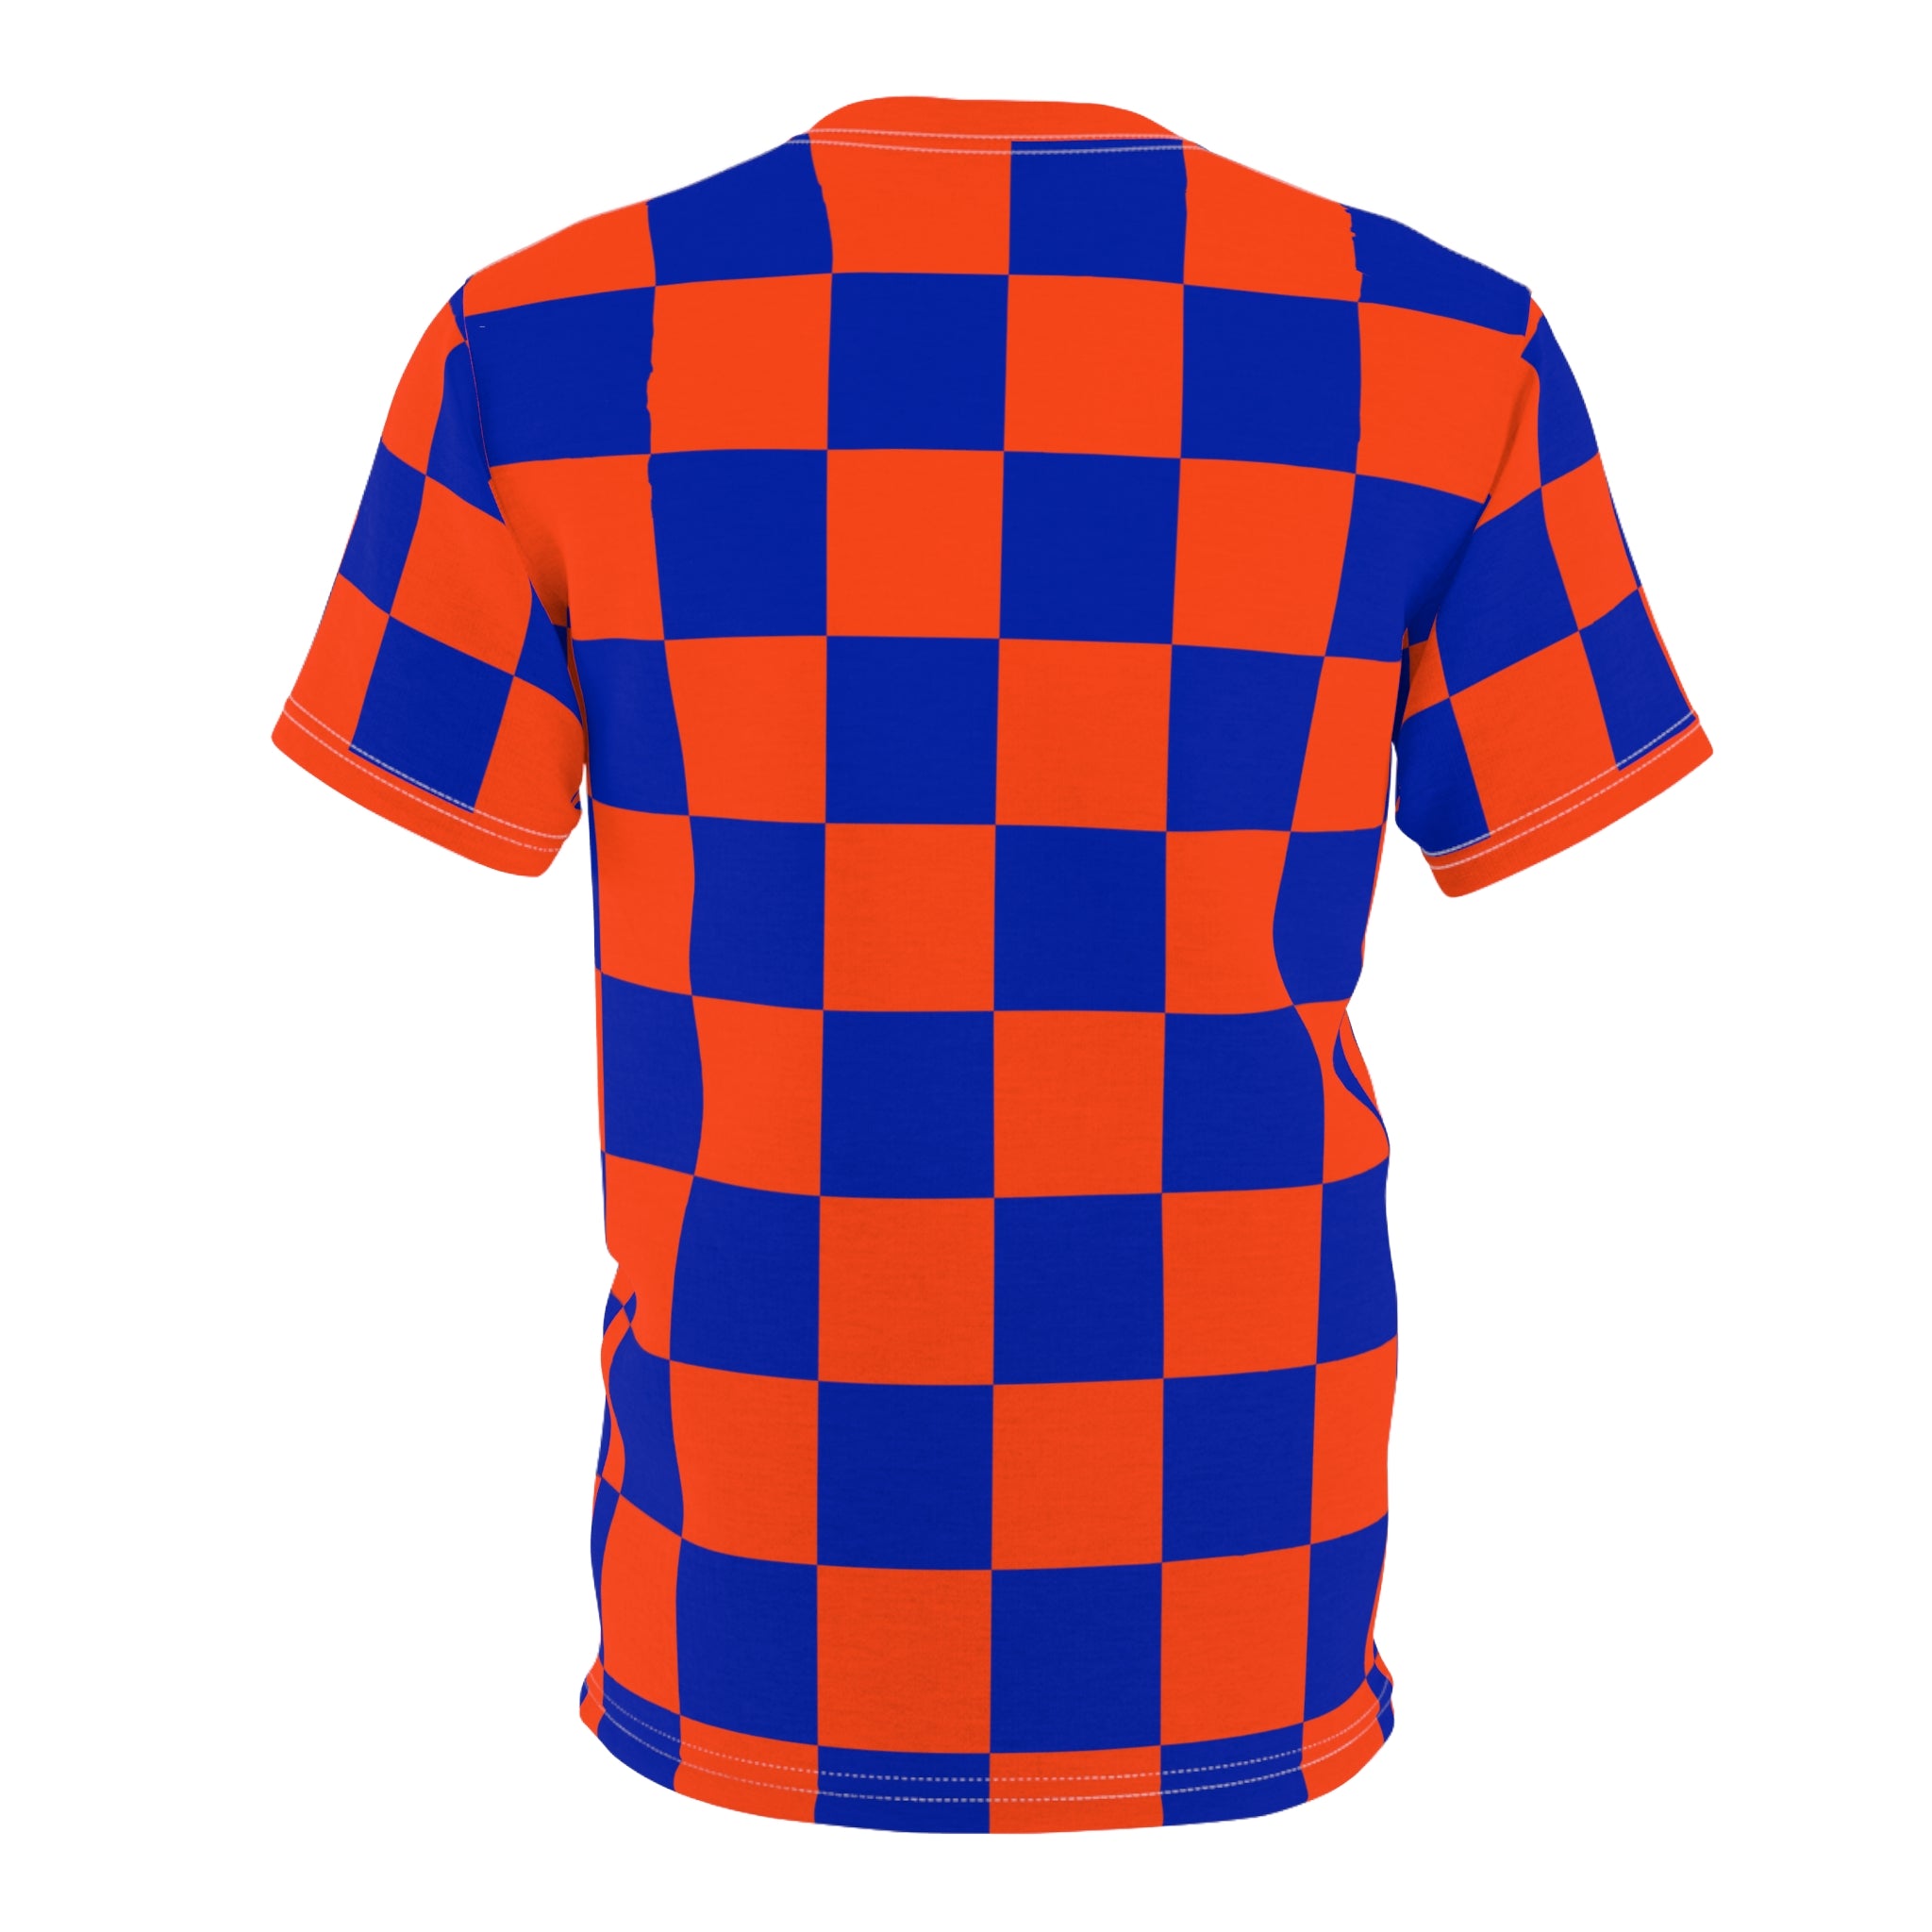 Checkerboard Shirt Blue & Orange